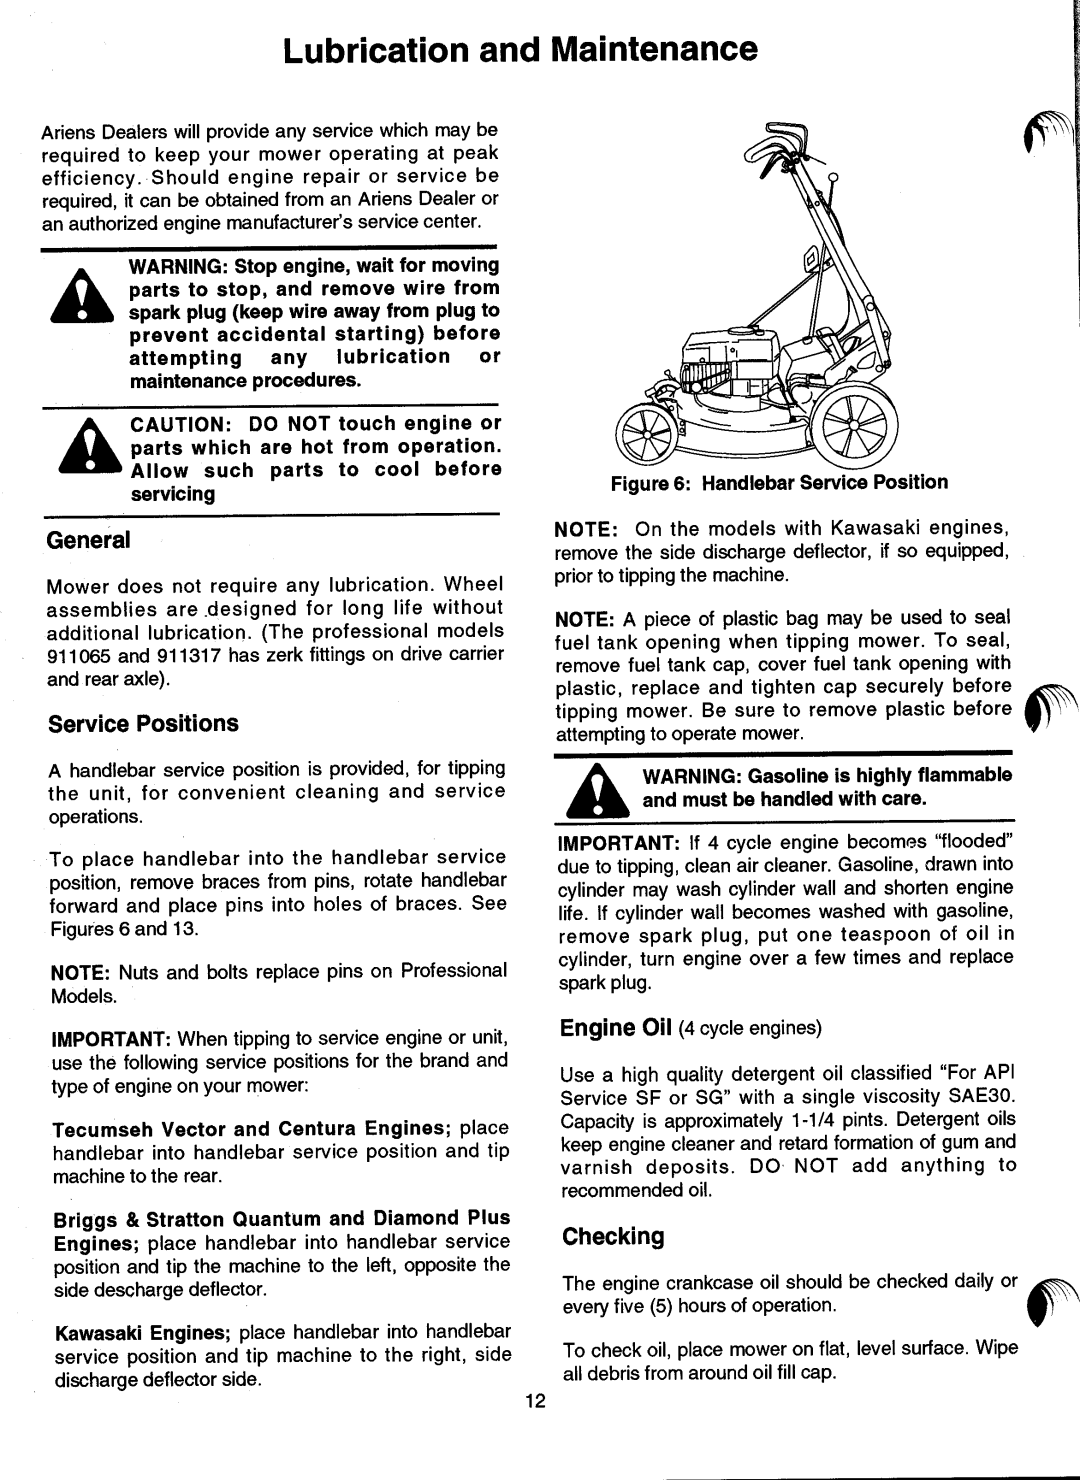 Ariens 911 manual 